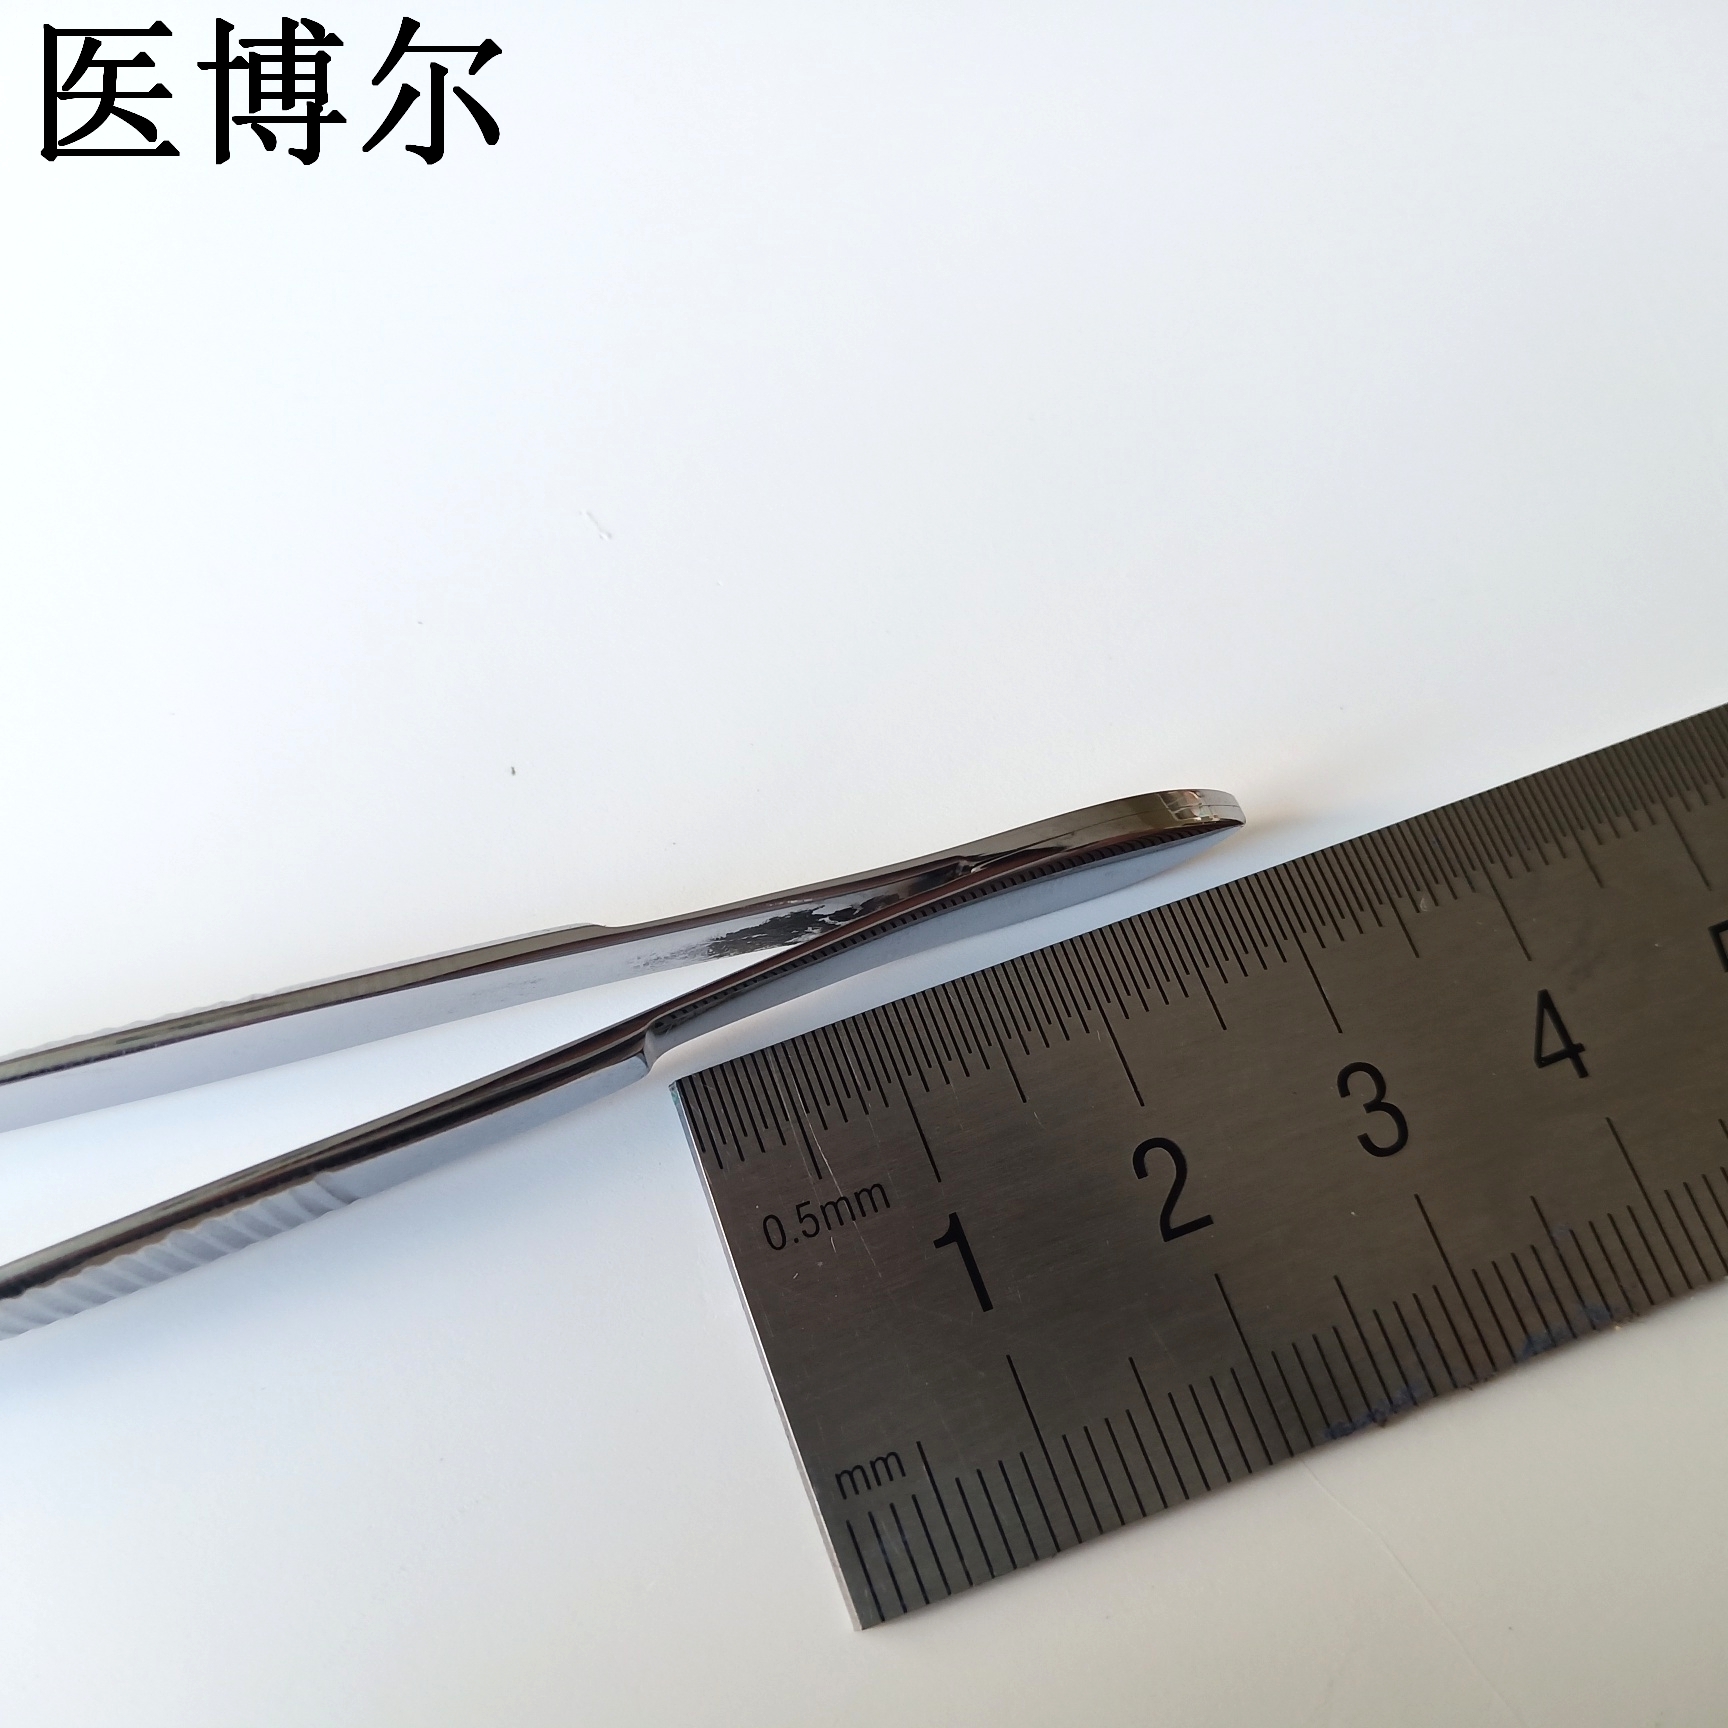 弯尖镊子 10cm (2).jpg